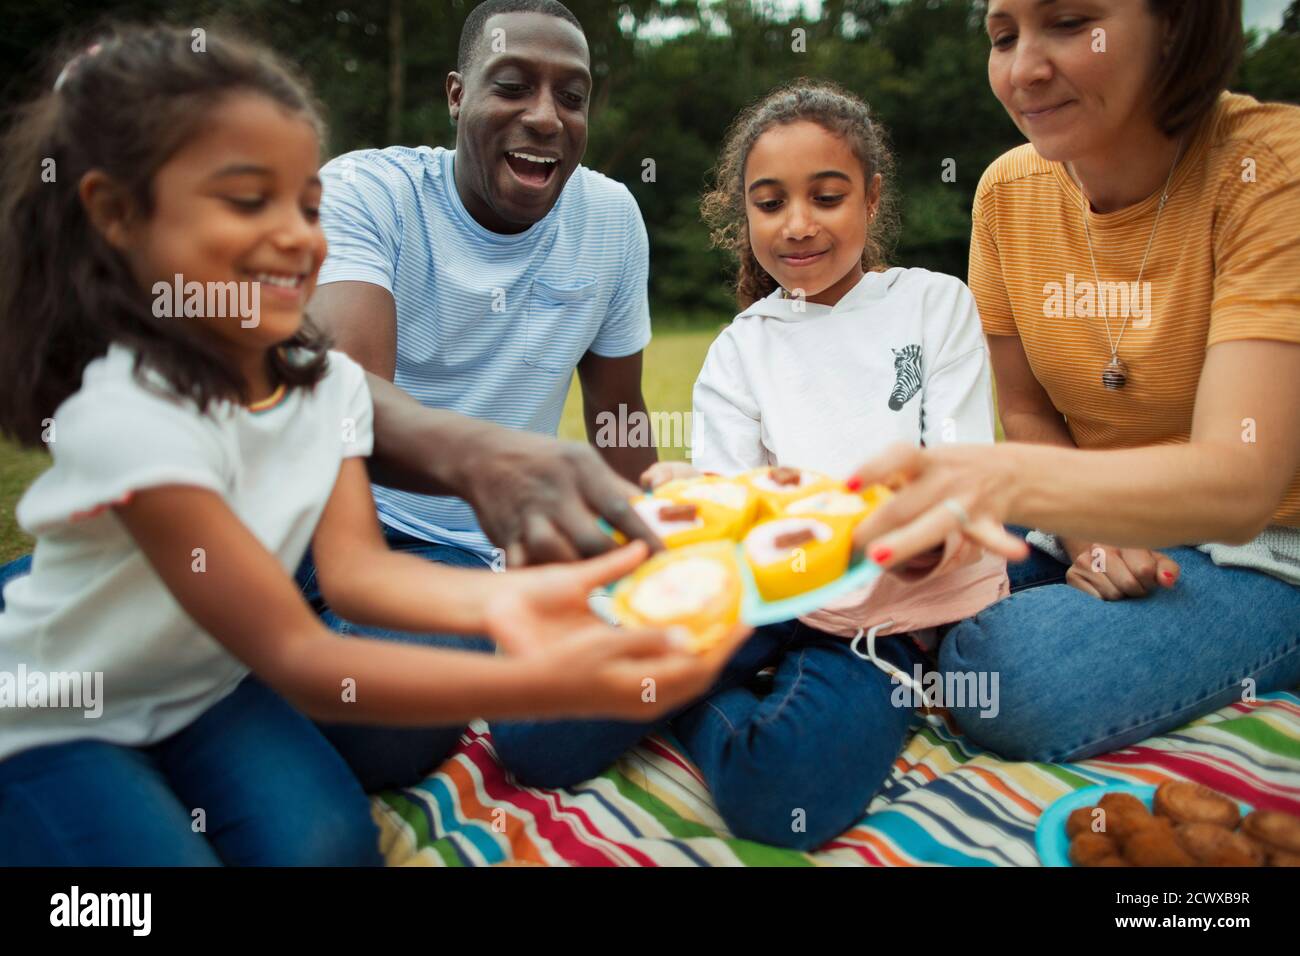 Familia disfrutando de pastelitos en la manta de picnic en el parque Foto de stock